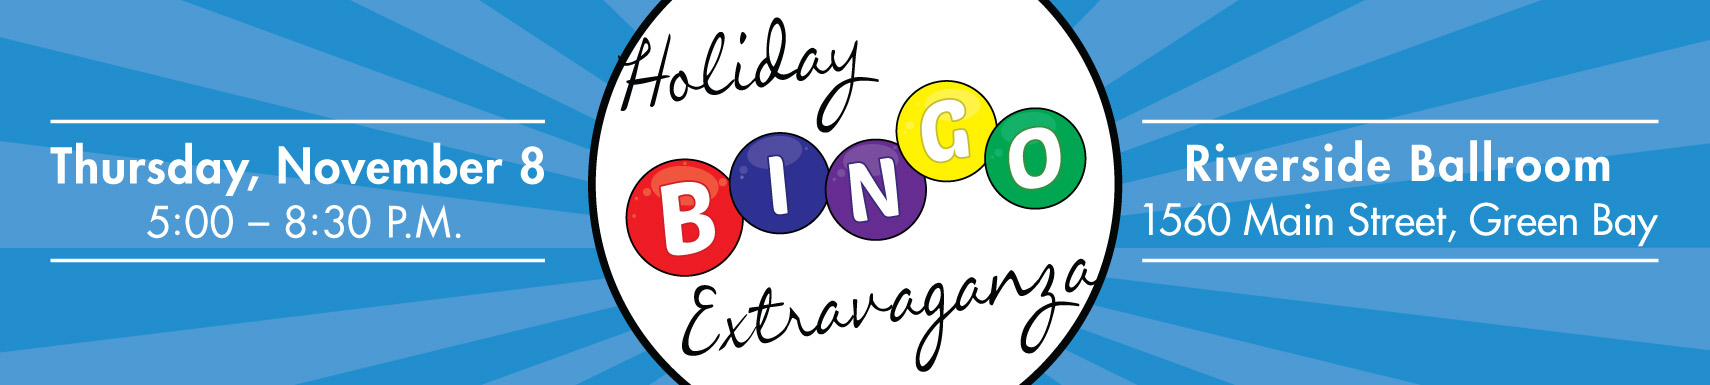 Holiday Bingo Extravaganza